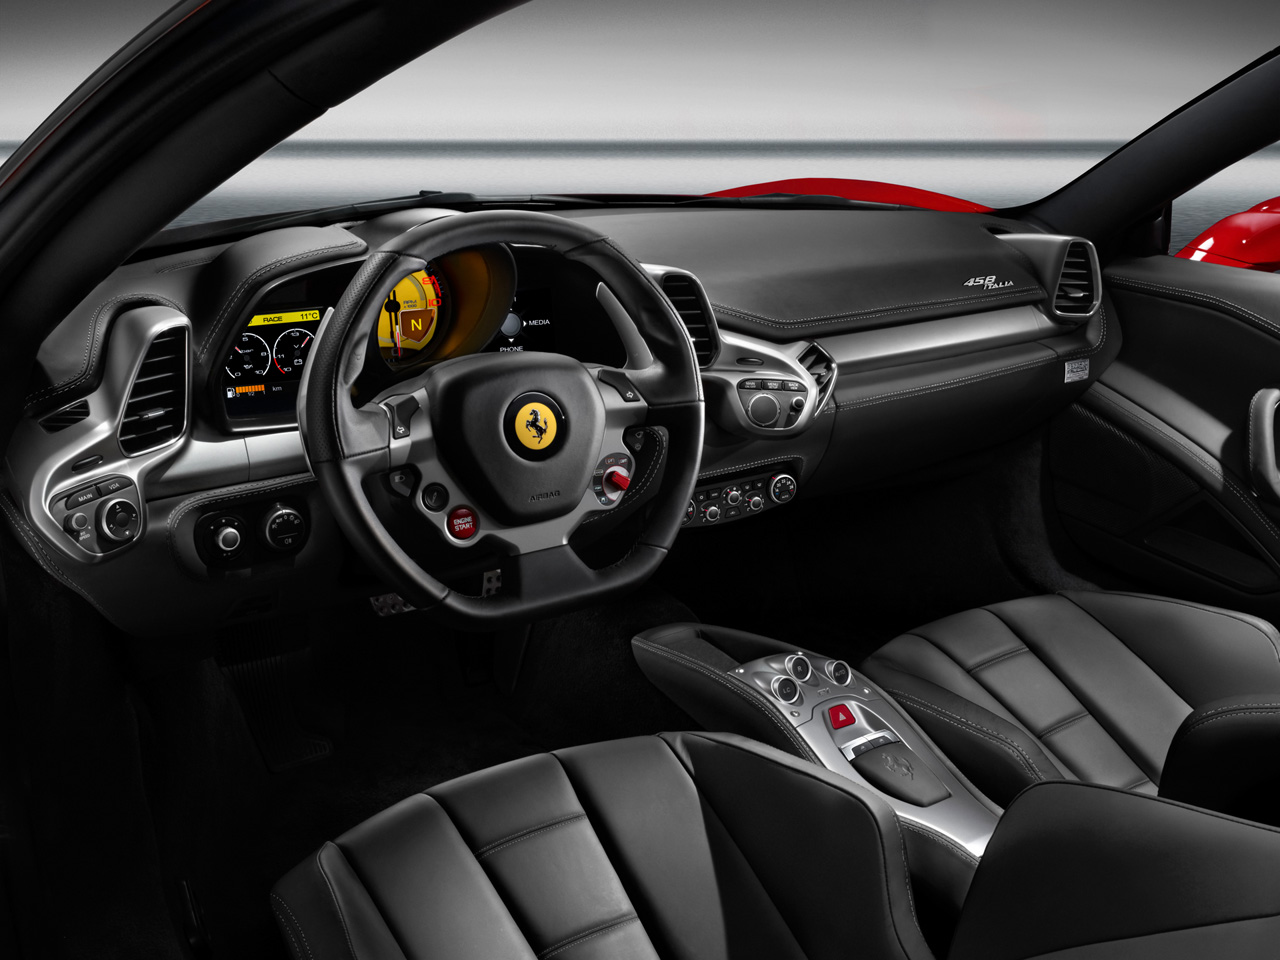 2010 Ferrari 458 Italia